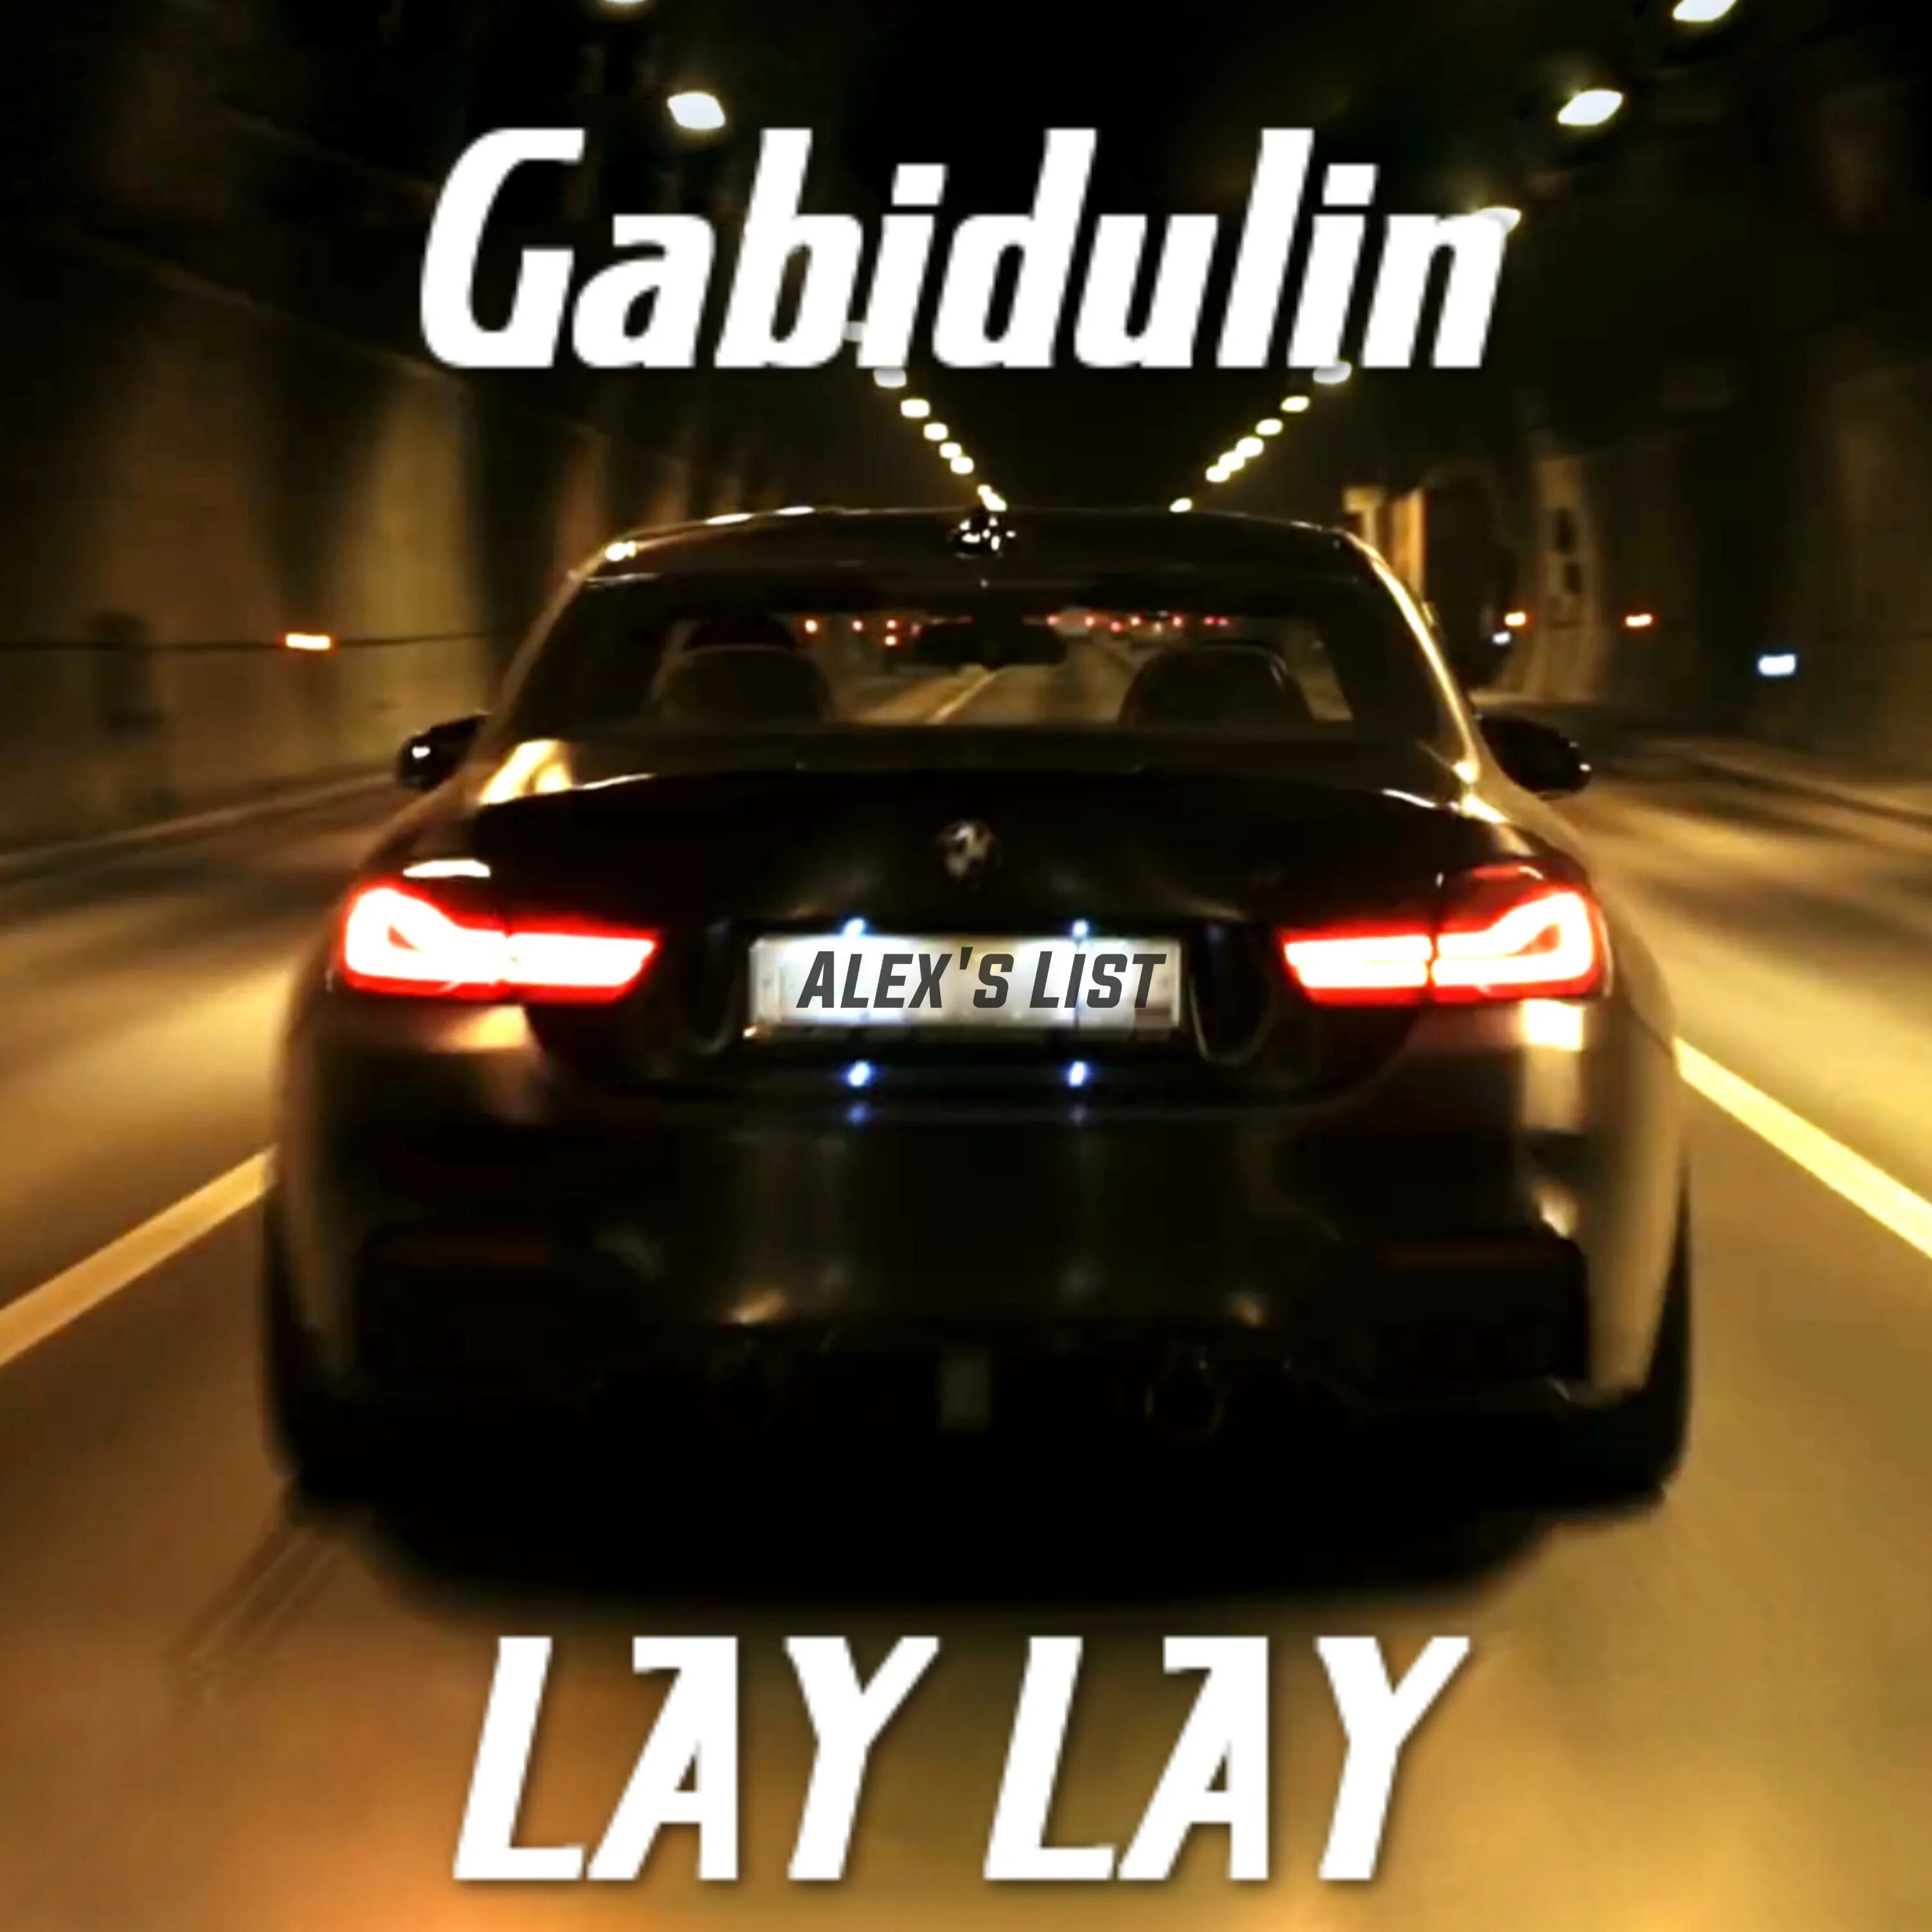 Lay lay mp3. Николин Патрев - lay lay. Gabidulin lay lay Song. Lay laid laid. Lay lay lay song